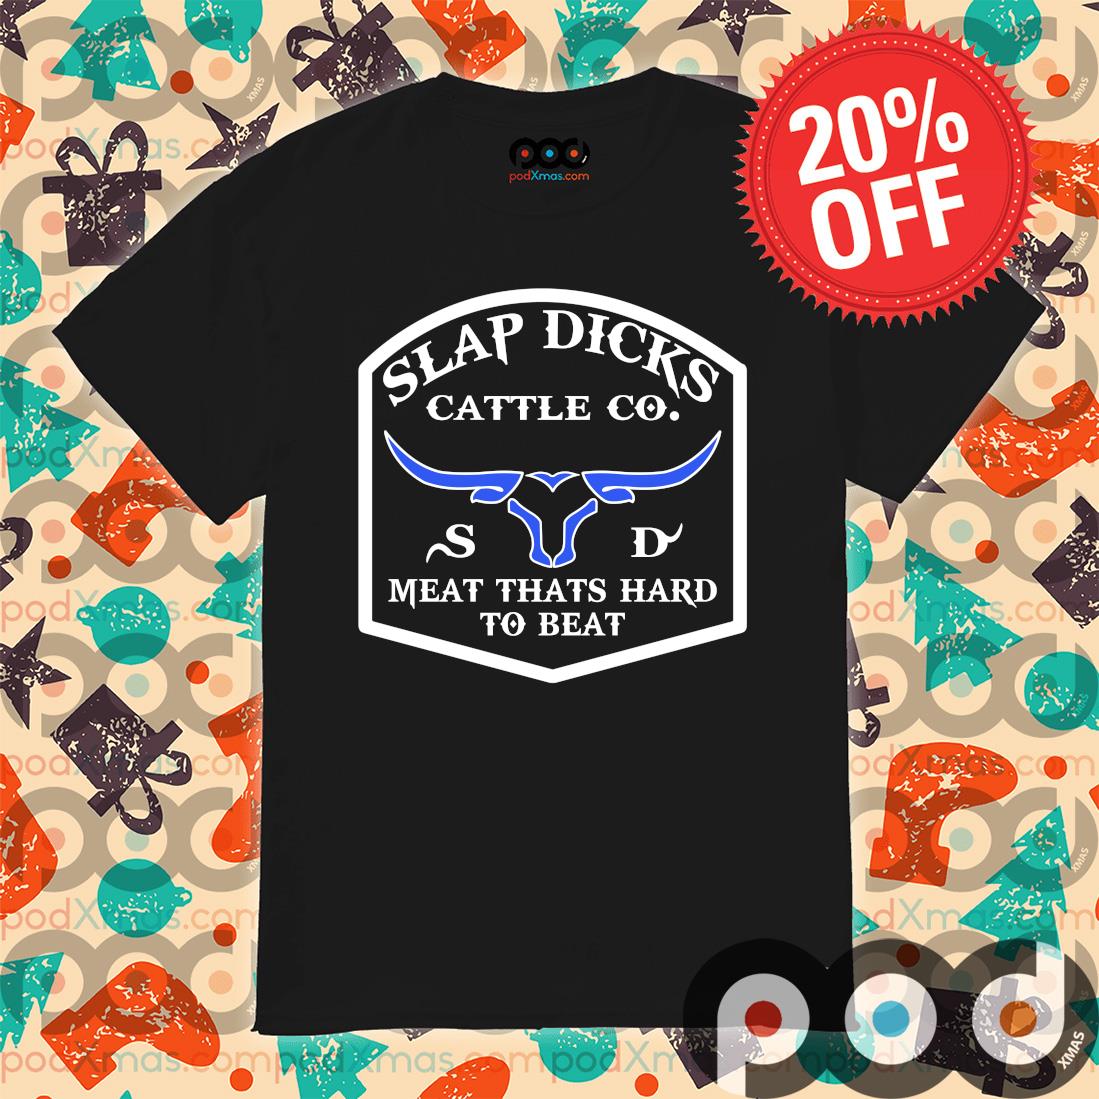 Slap dicks cattle